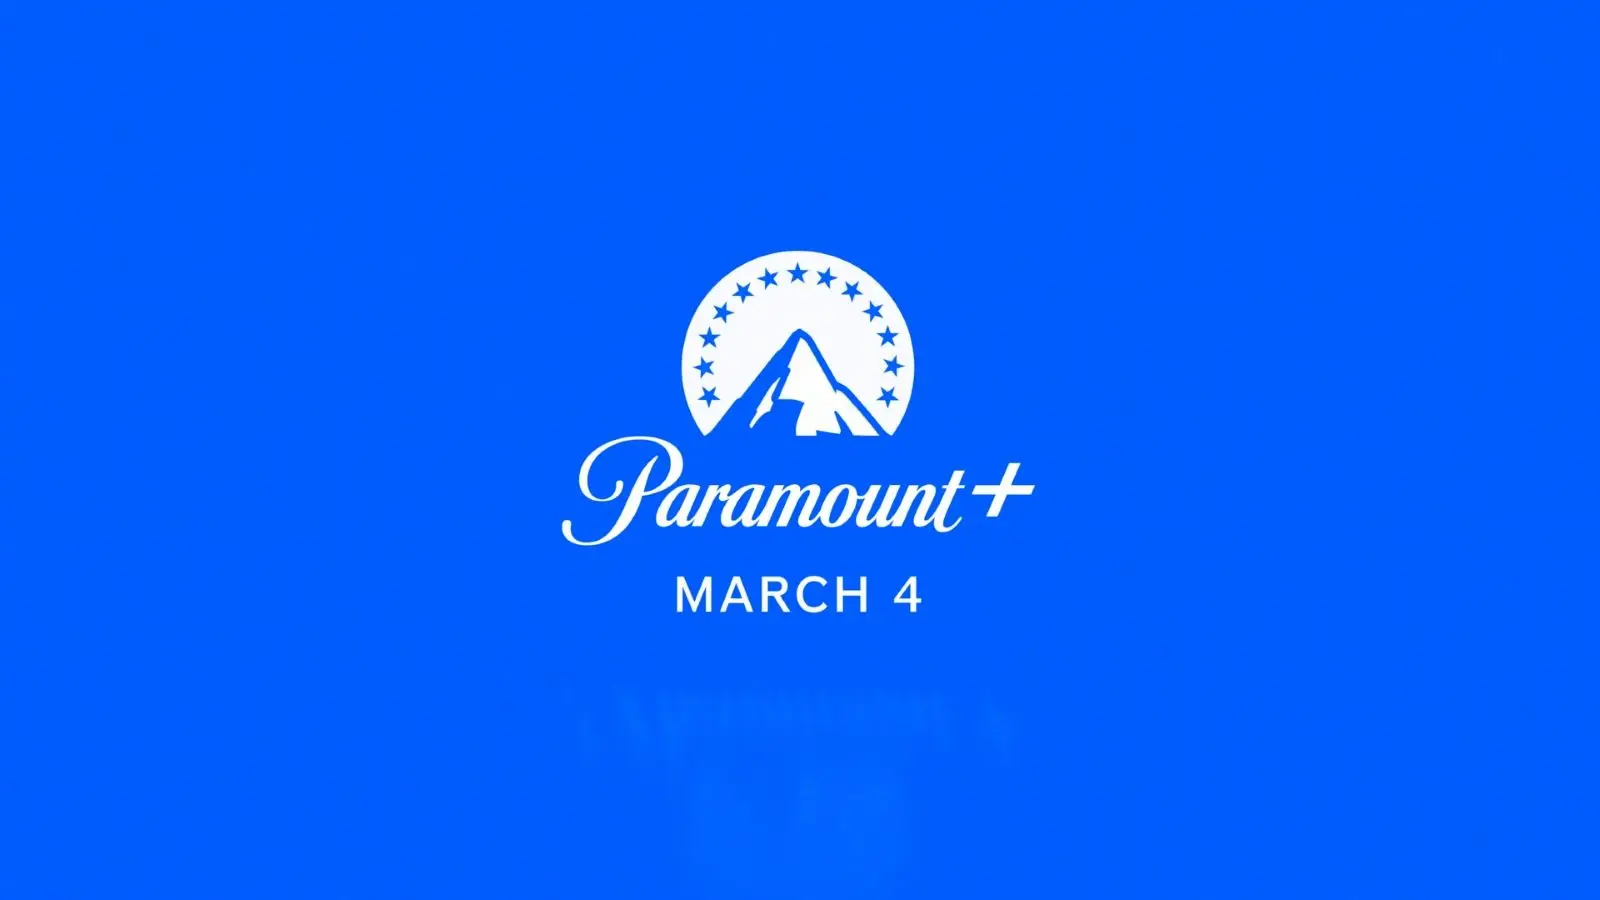 派拉蒙流媒体平台Paramount+公布详细未来计划